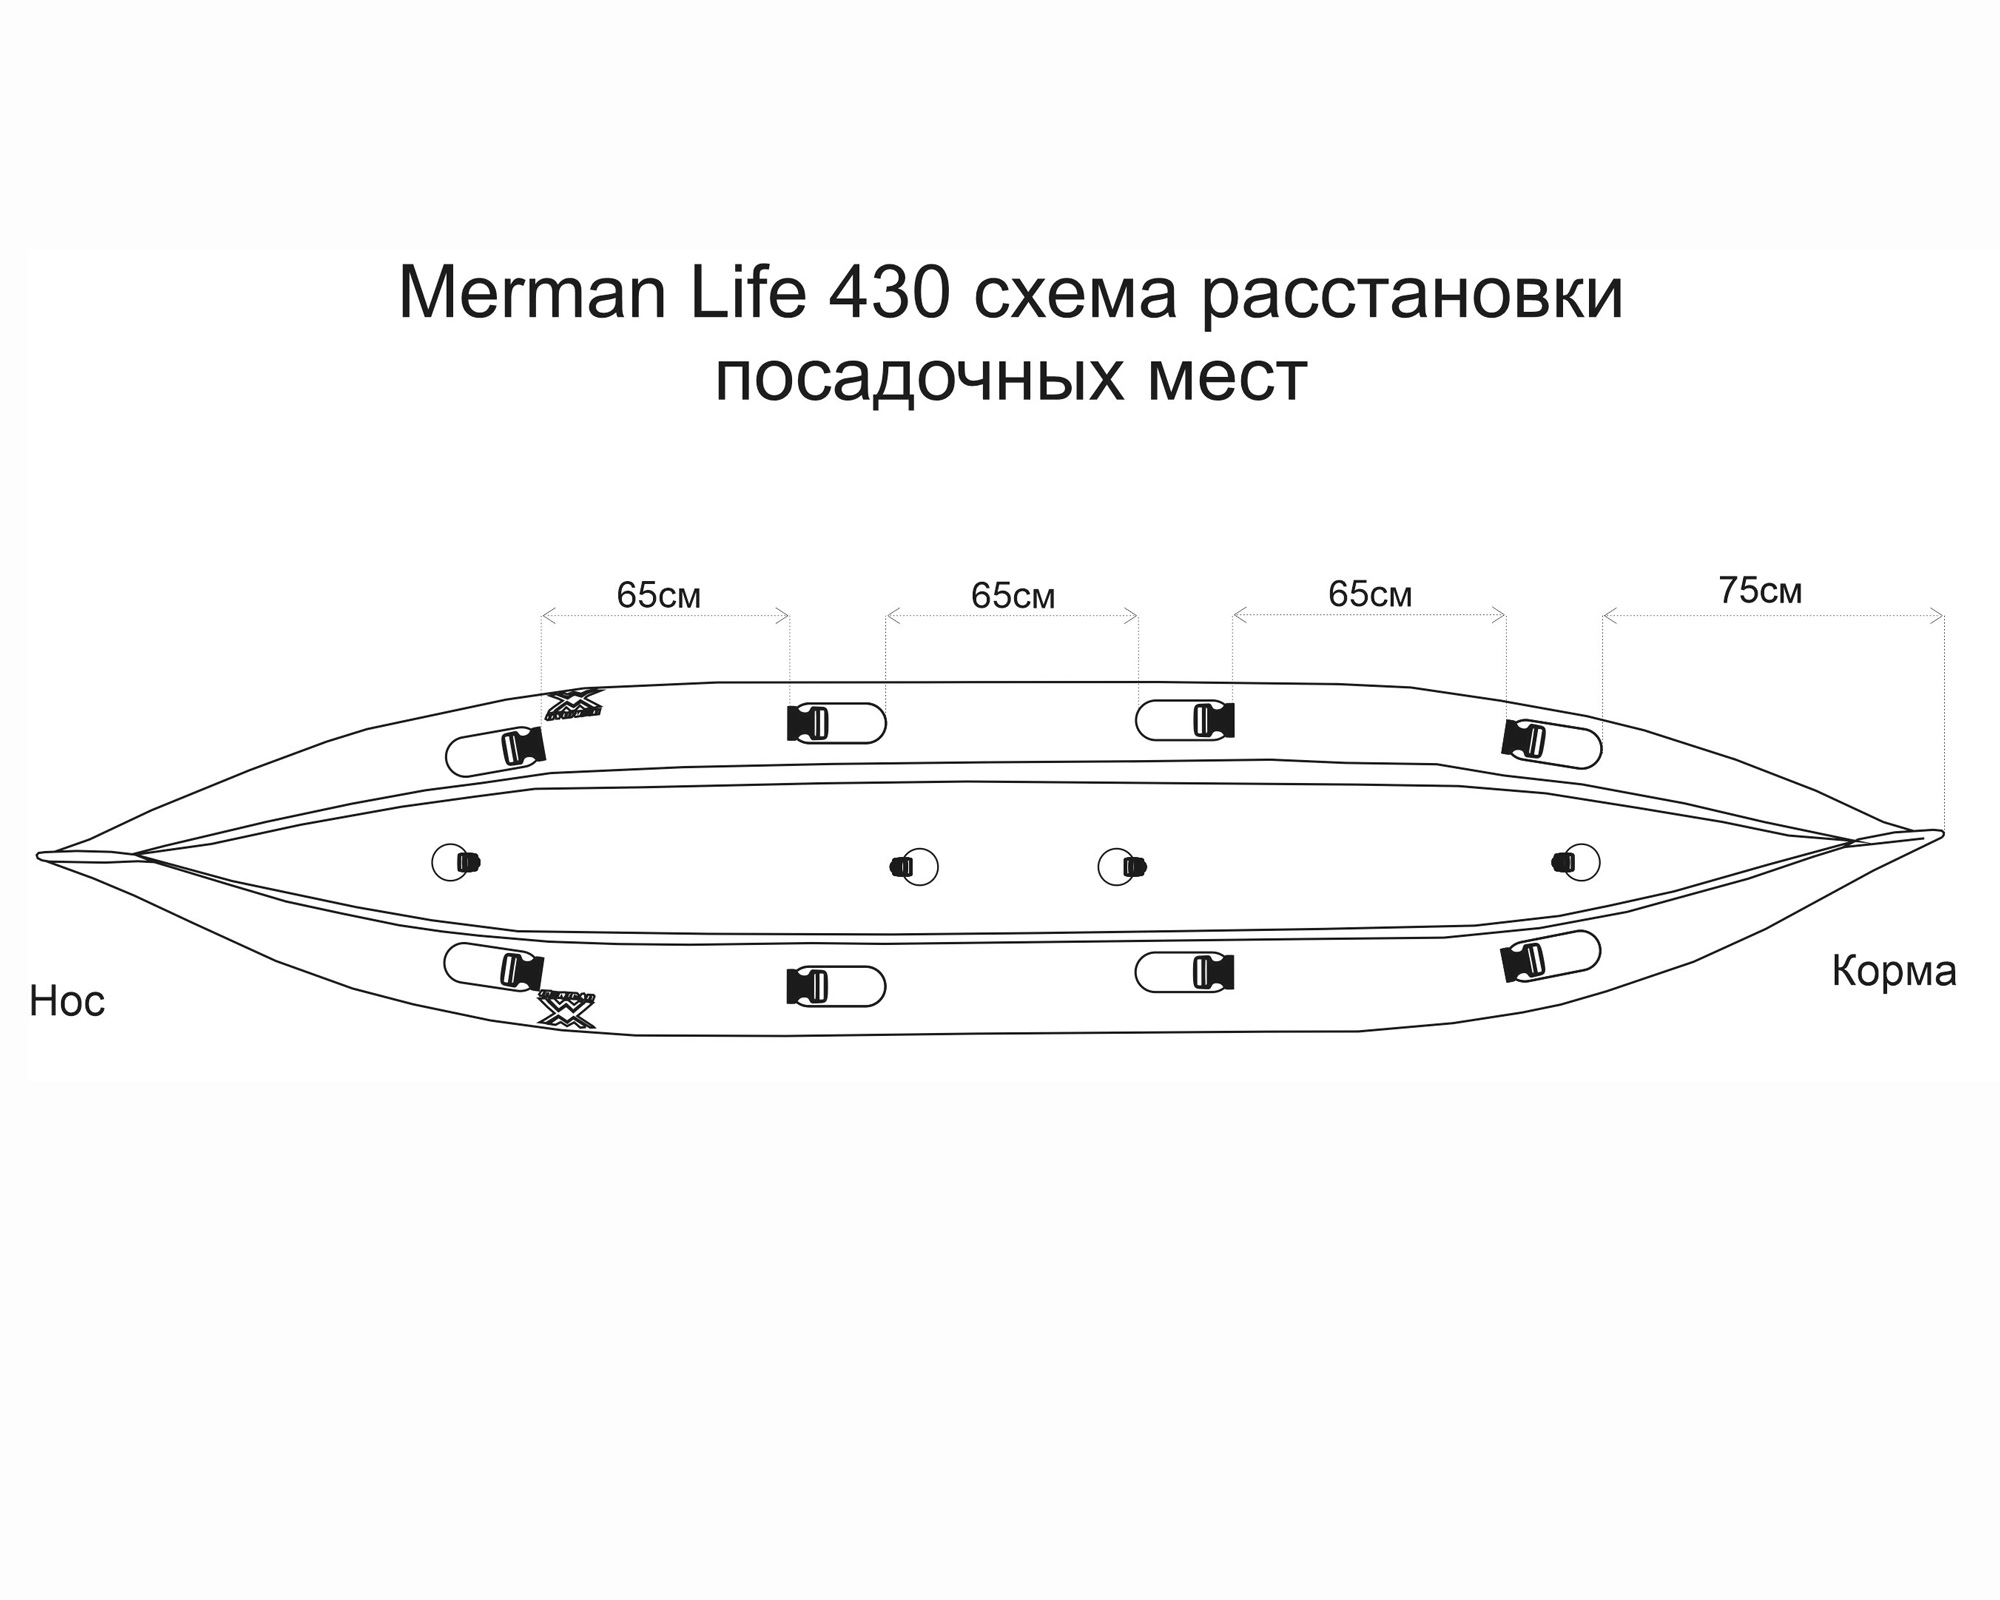 Merman Life 430/1 одноместная байдарка, цвет оранжевый